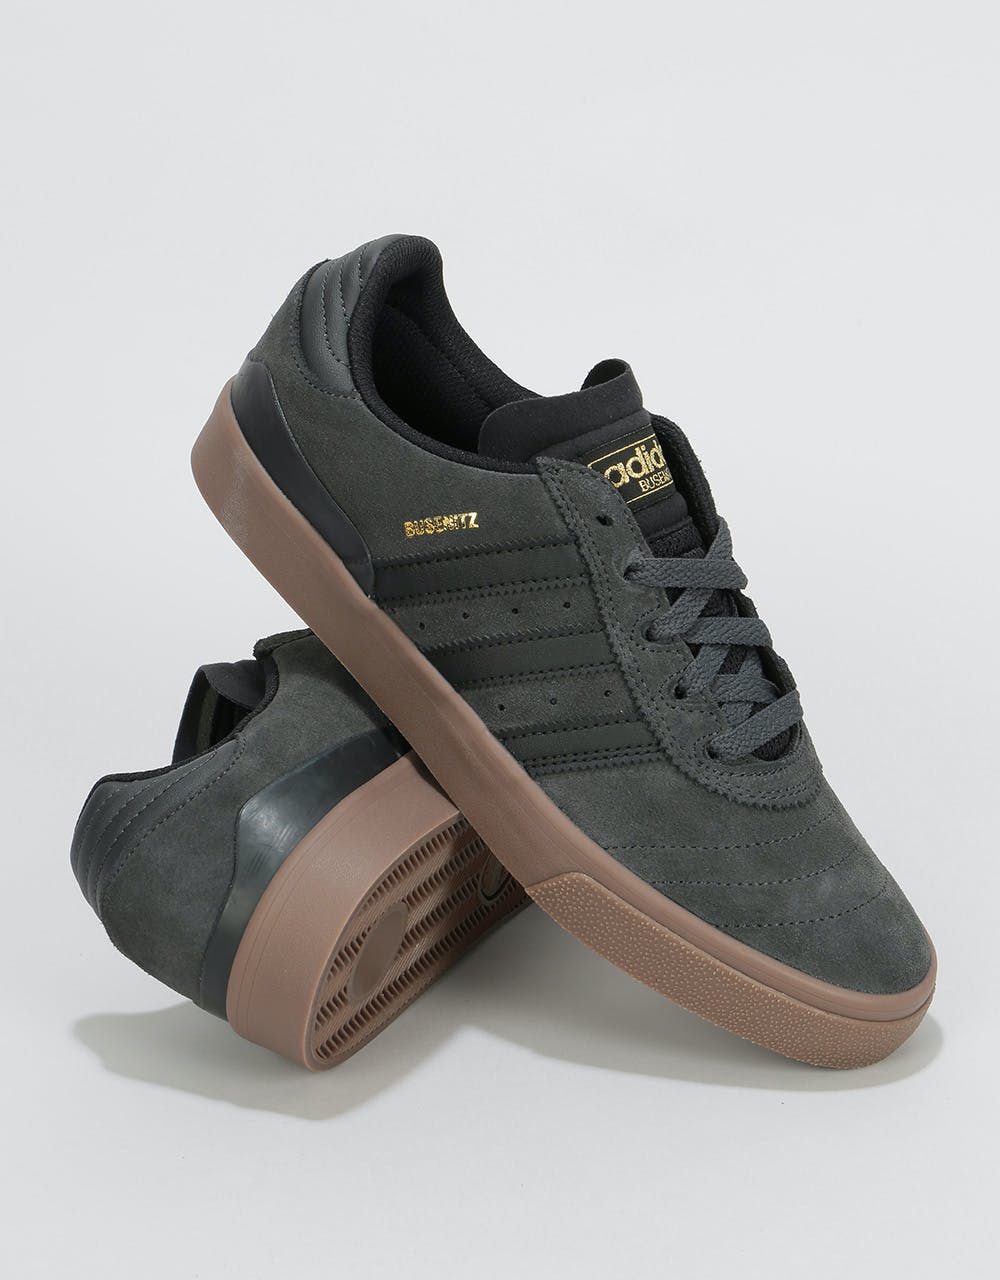 Adidas Busenitz Vulc Skate Shoes - Solid Grey/Core Black/Gum